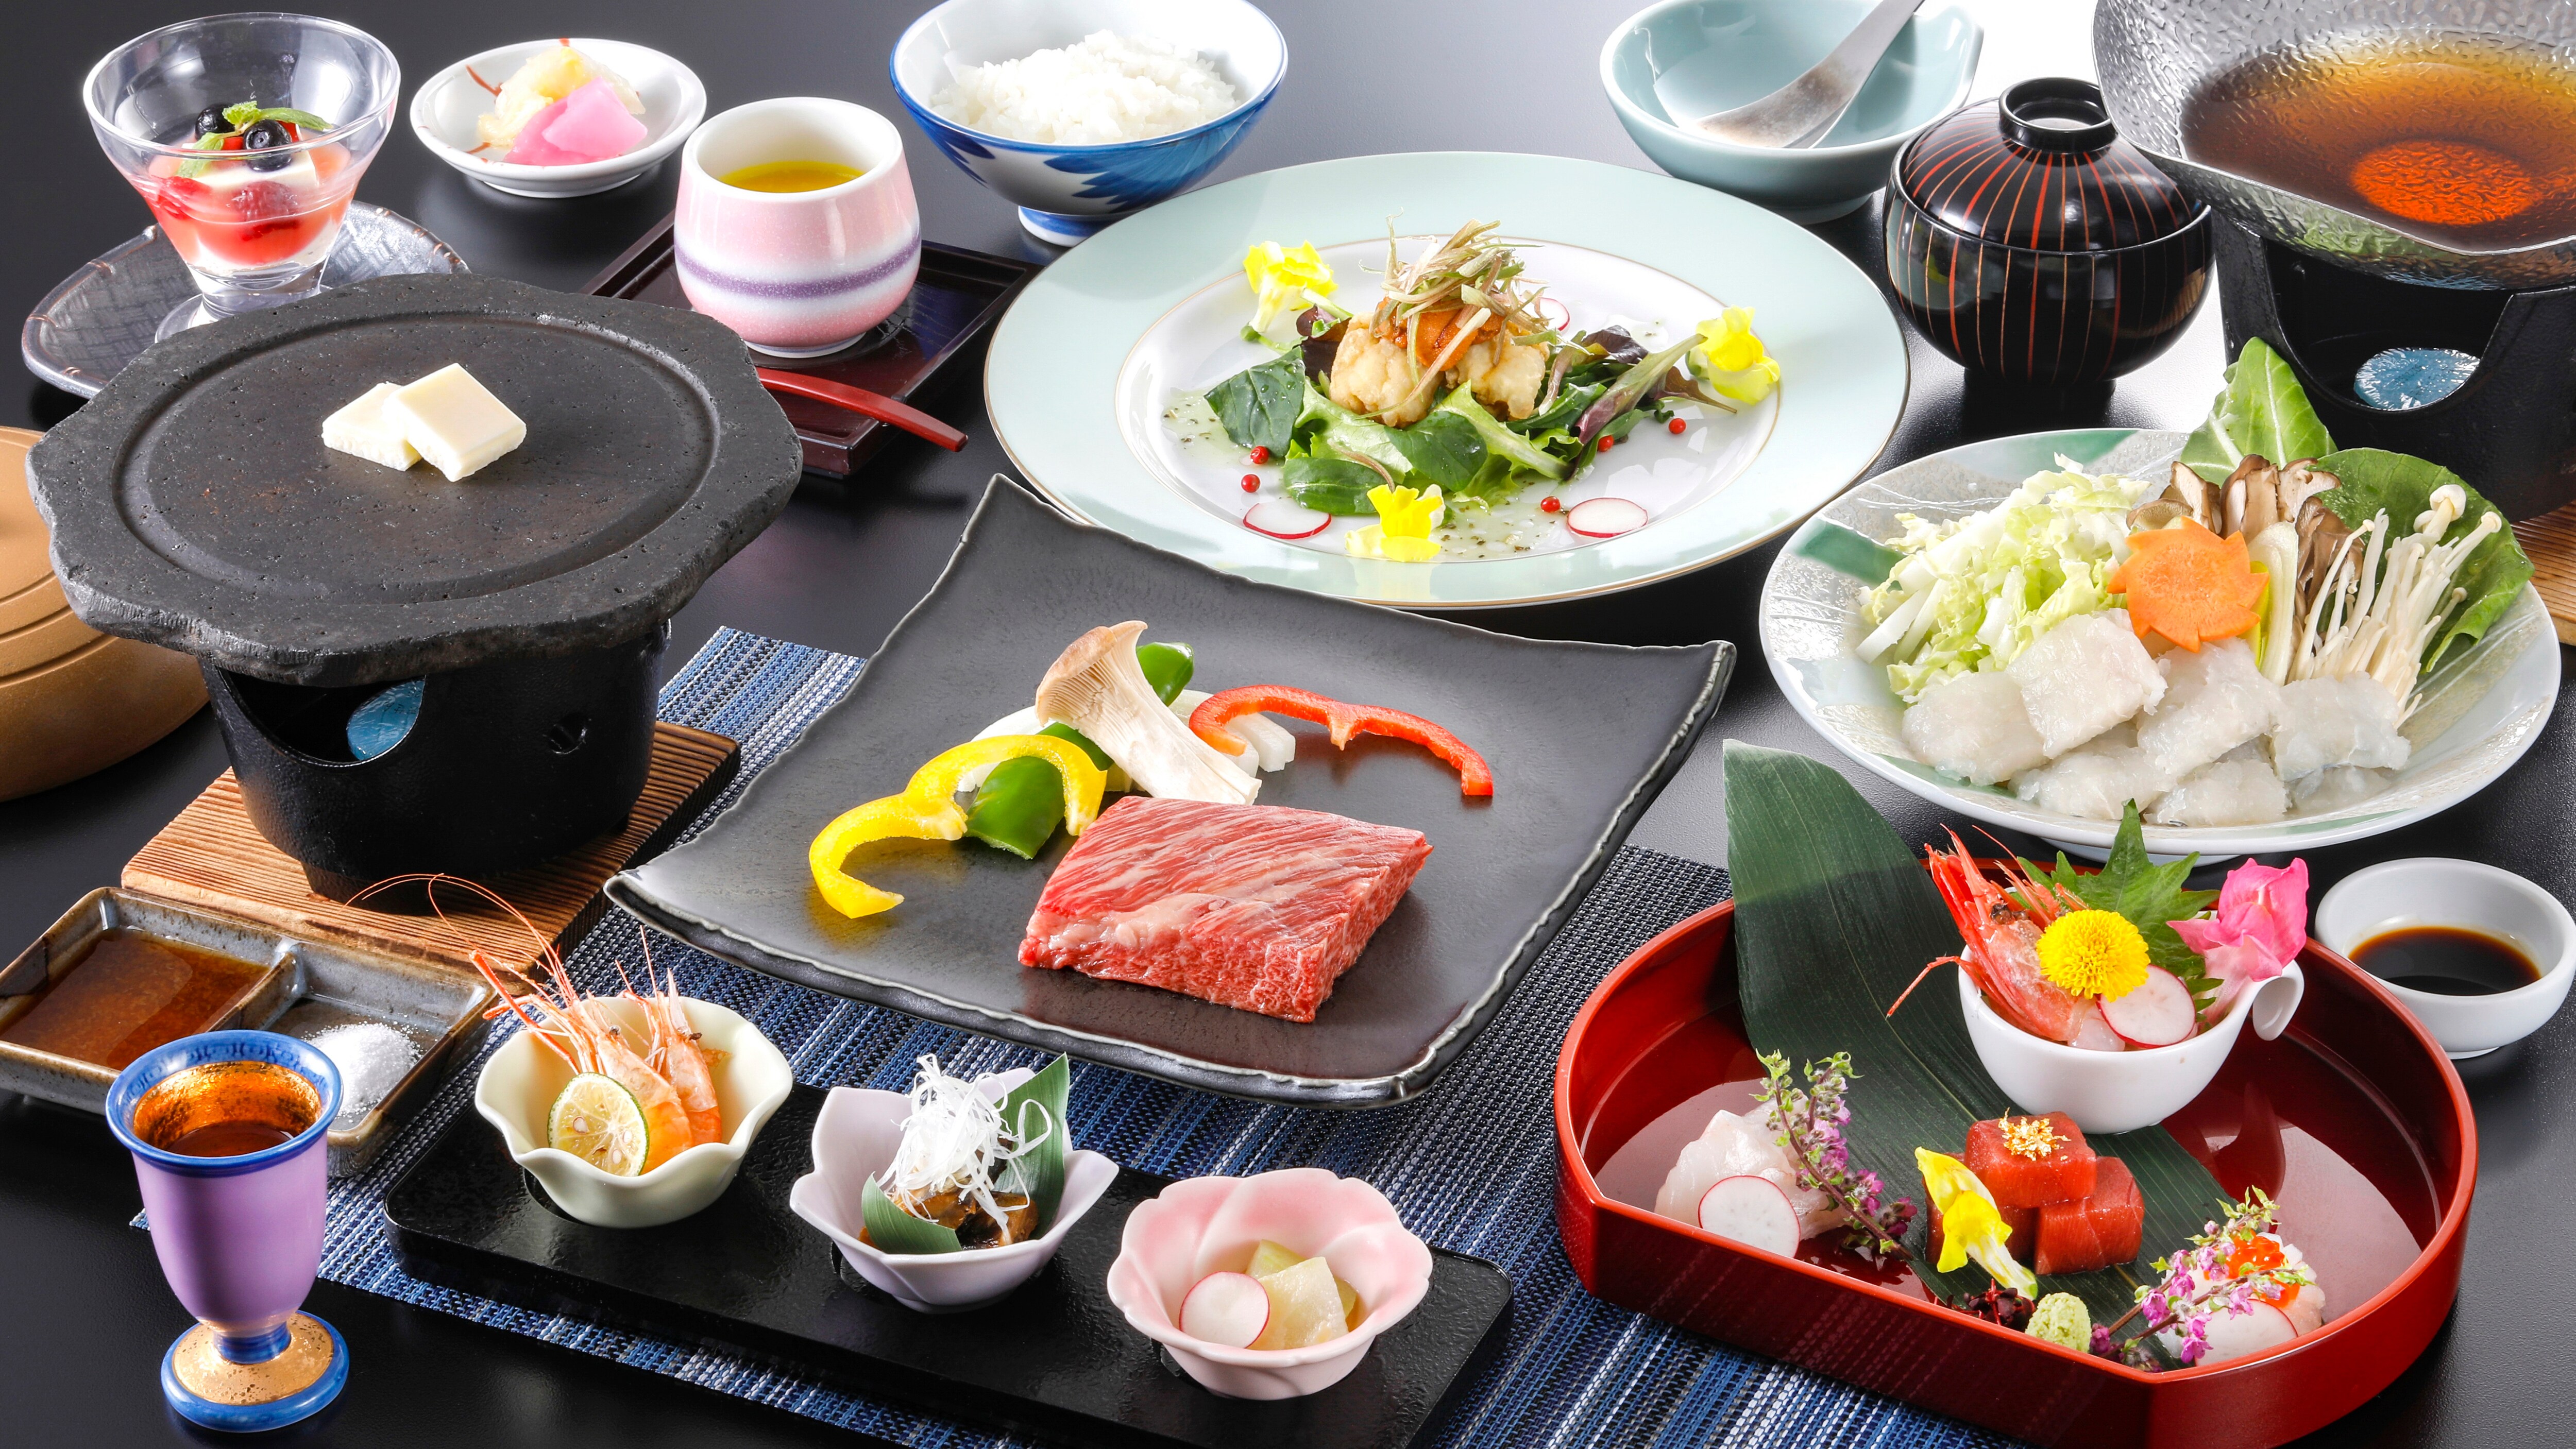 Summer Kaiseki Meal with Tajima Beef Steak